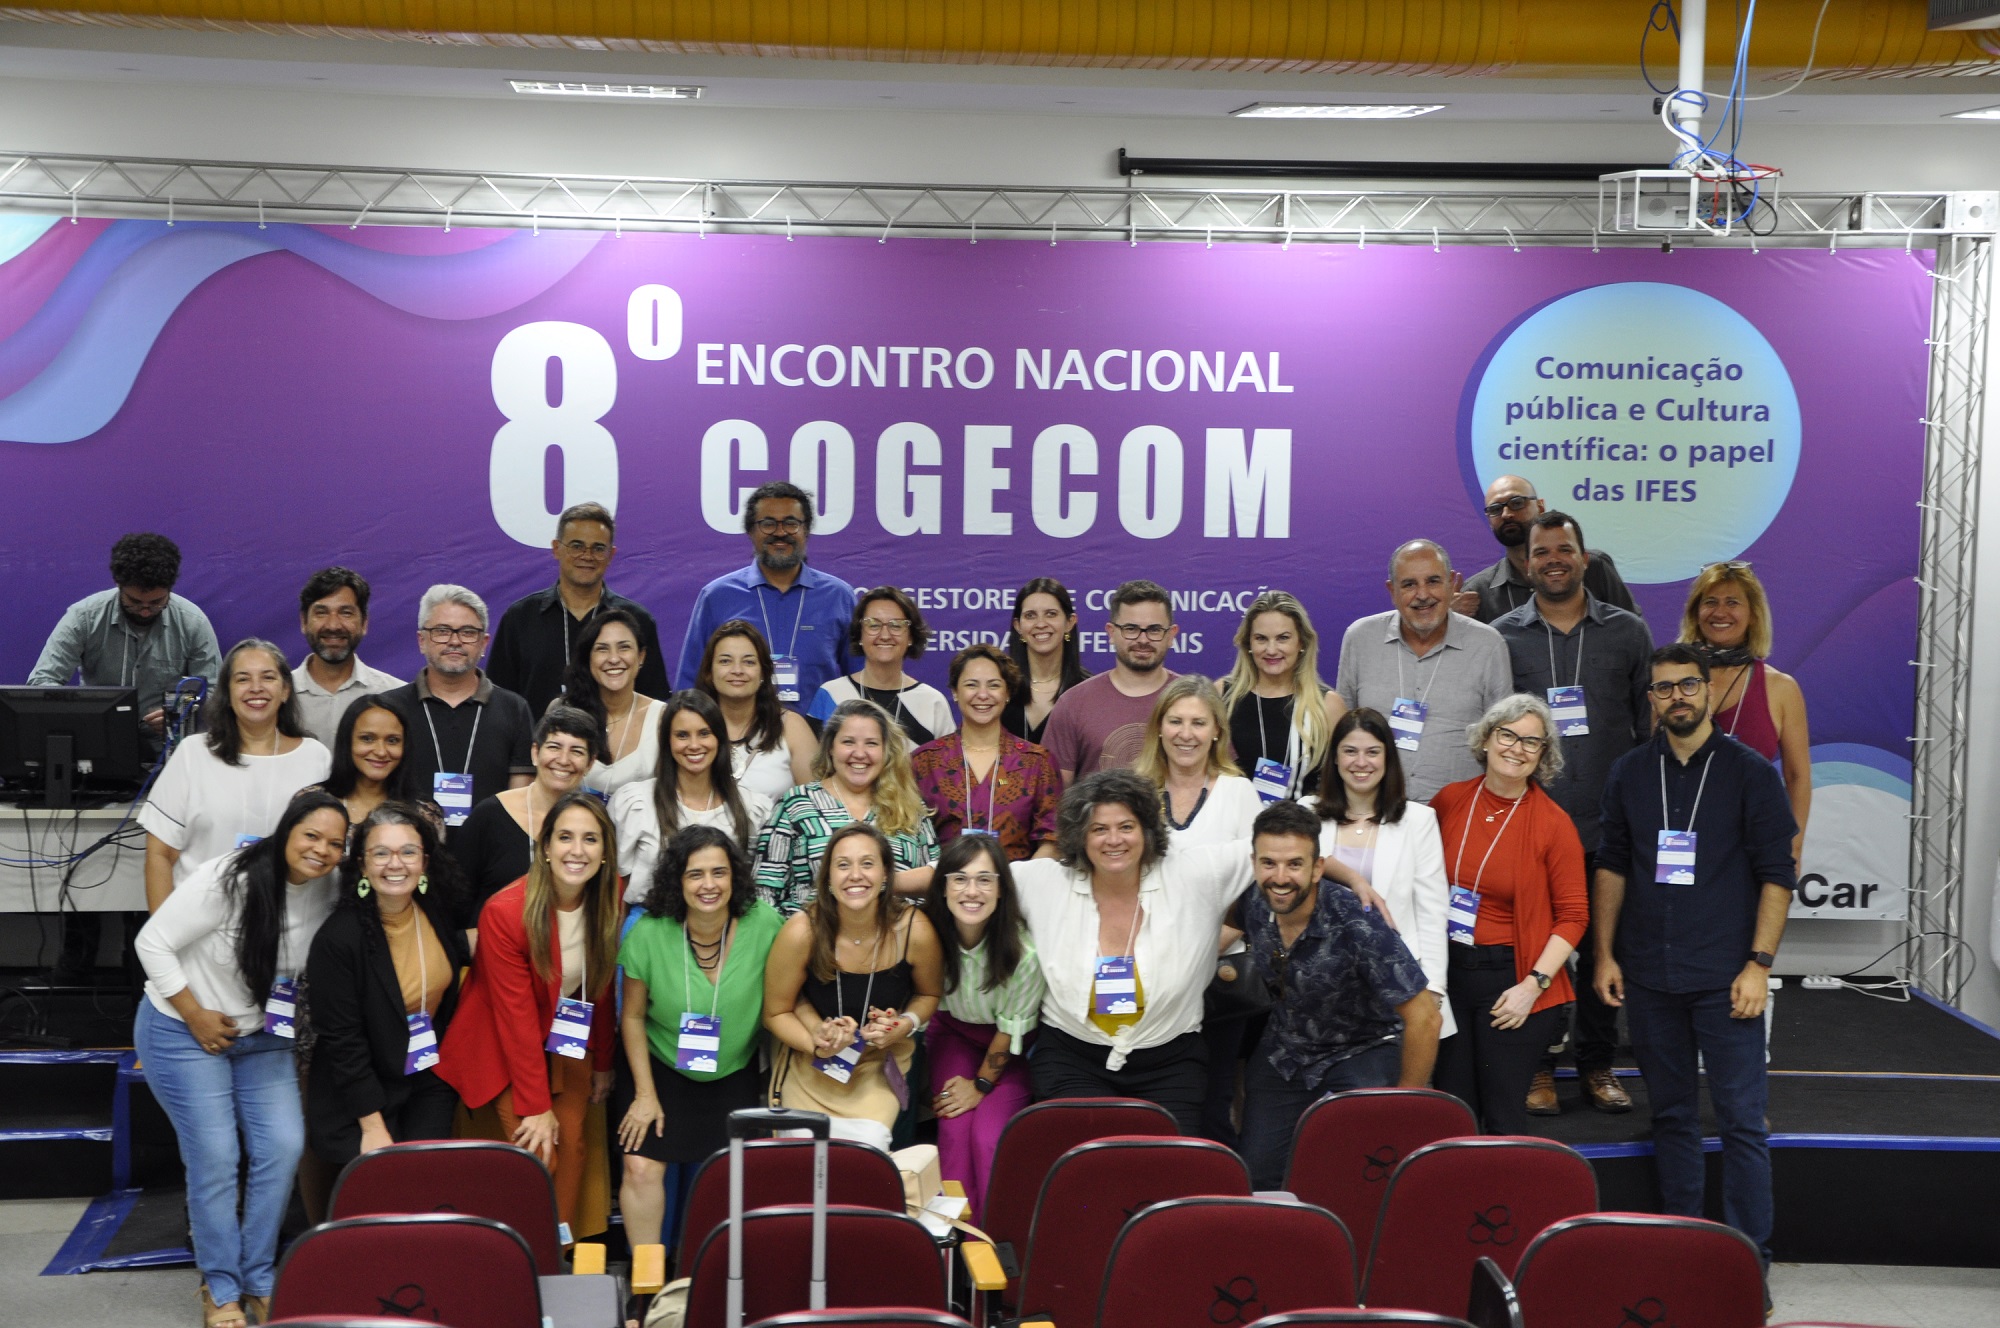 Participantes do 8º Congresso Nacional Cogecom posam em frente ao backdrop do evento